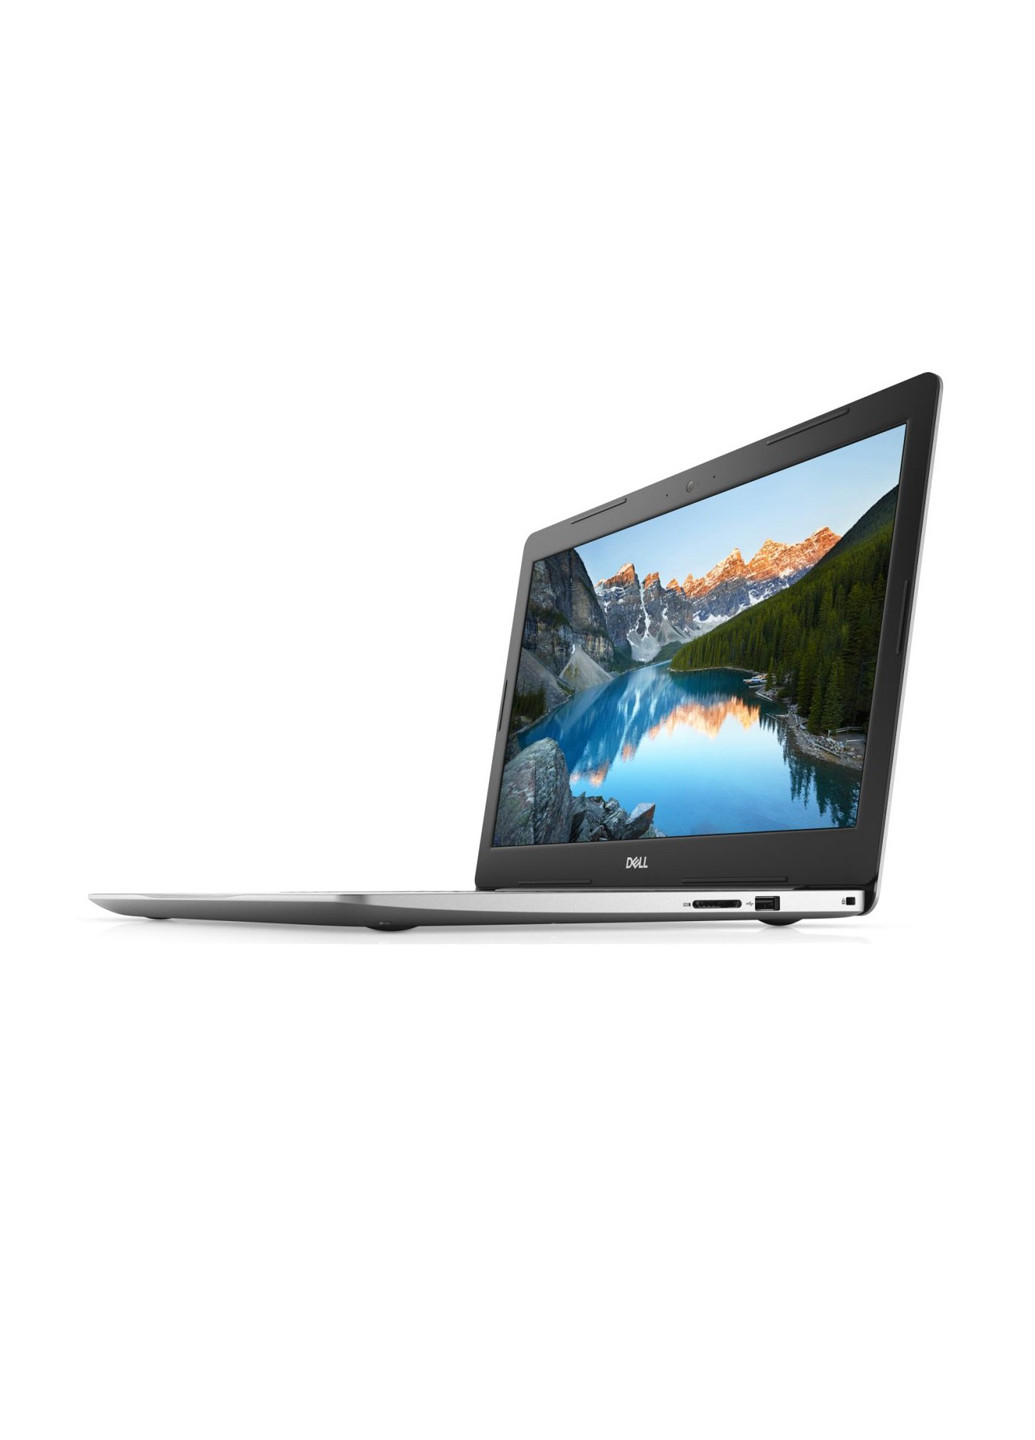 Ноутбук Dell Inspiron 5570 (I553410DDL-80S) Silver серебристый